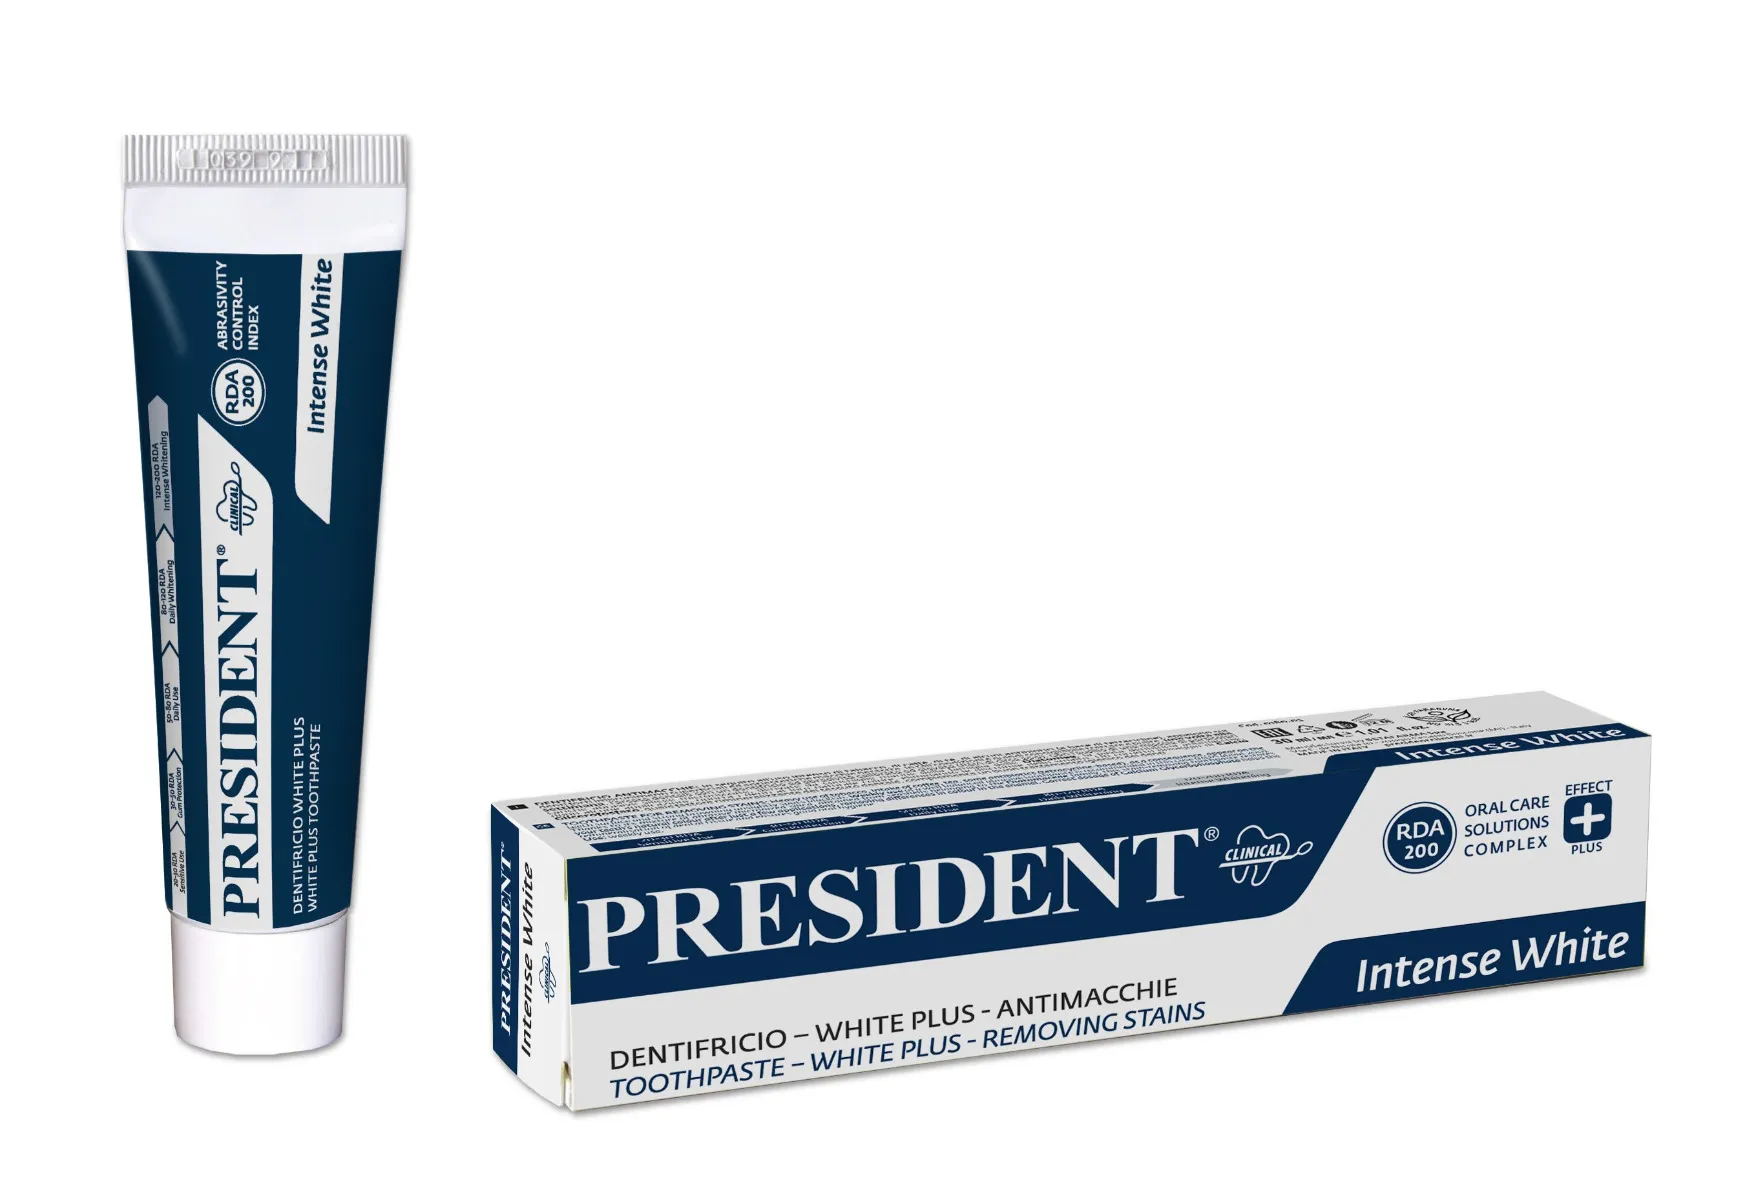 President White Plus intense